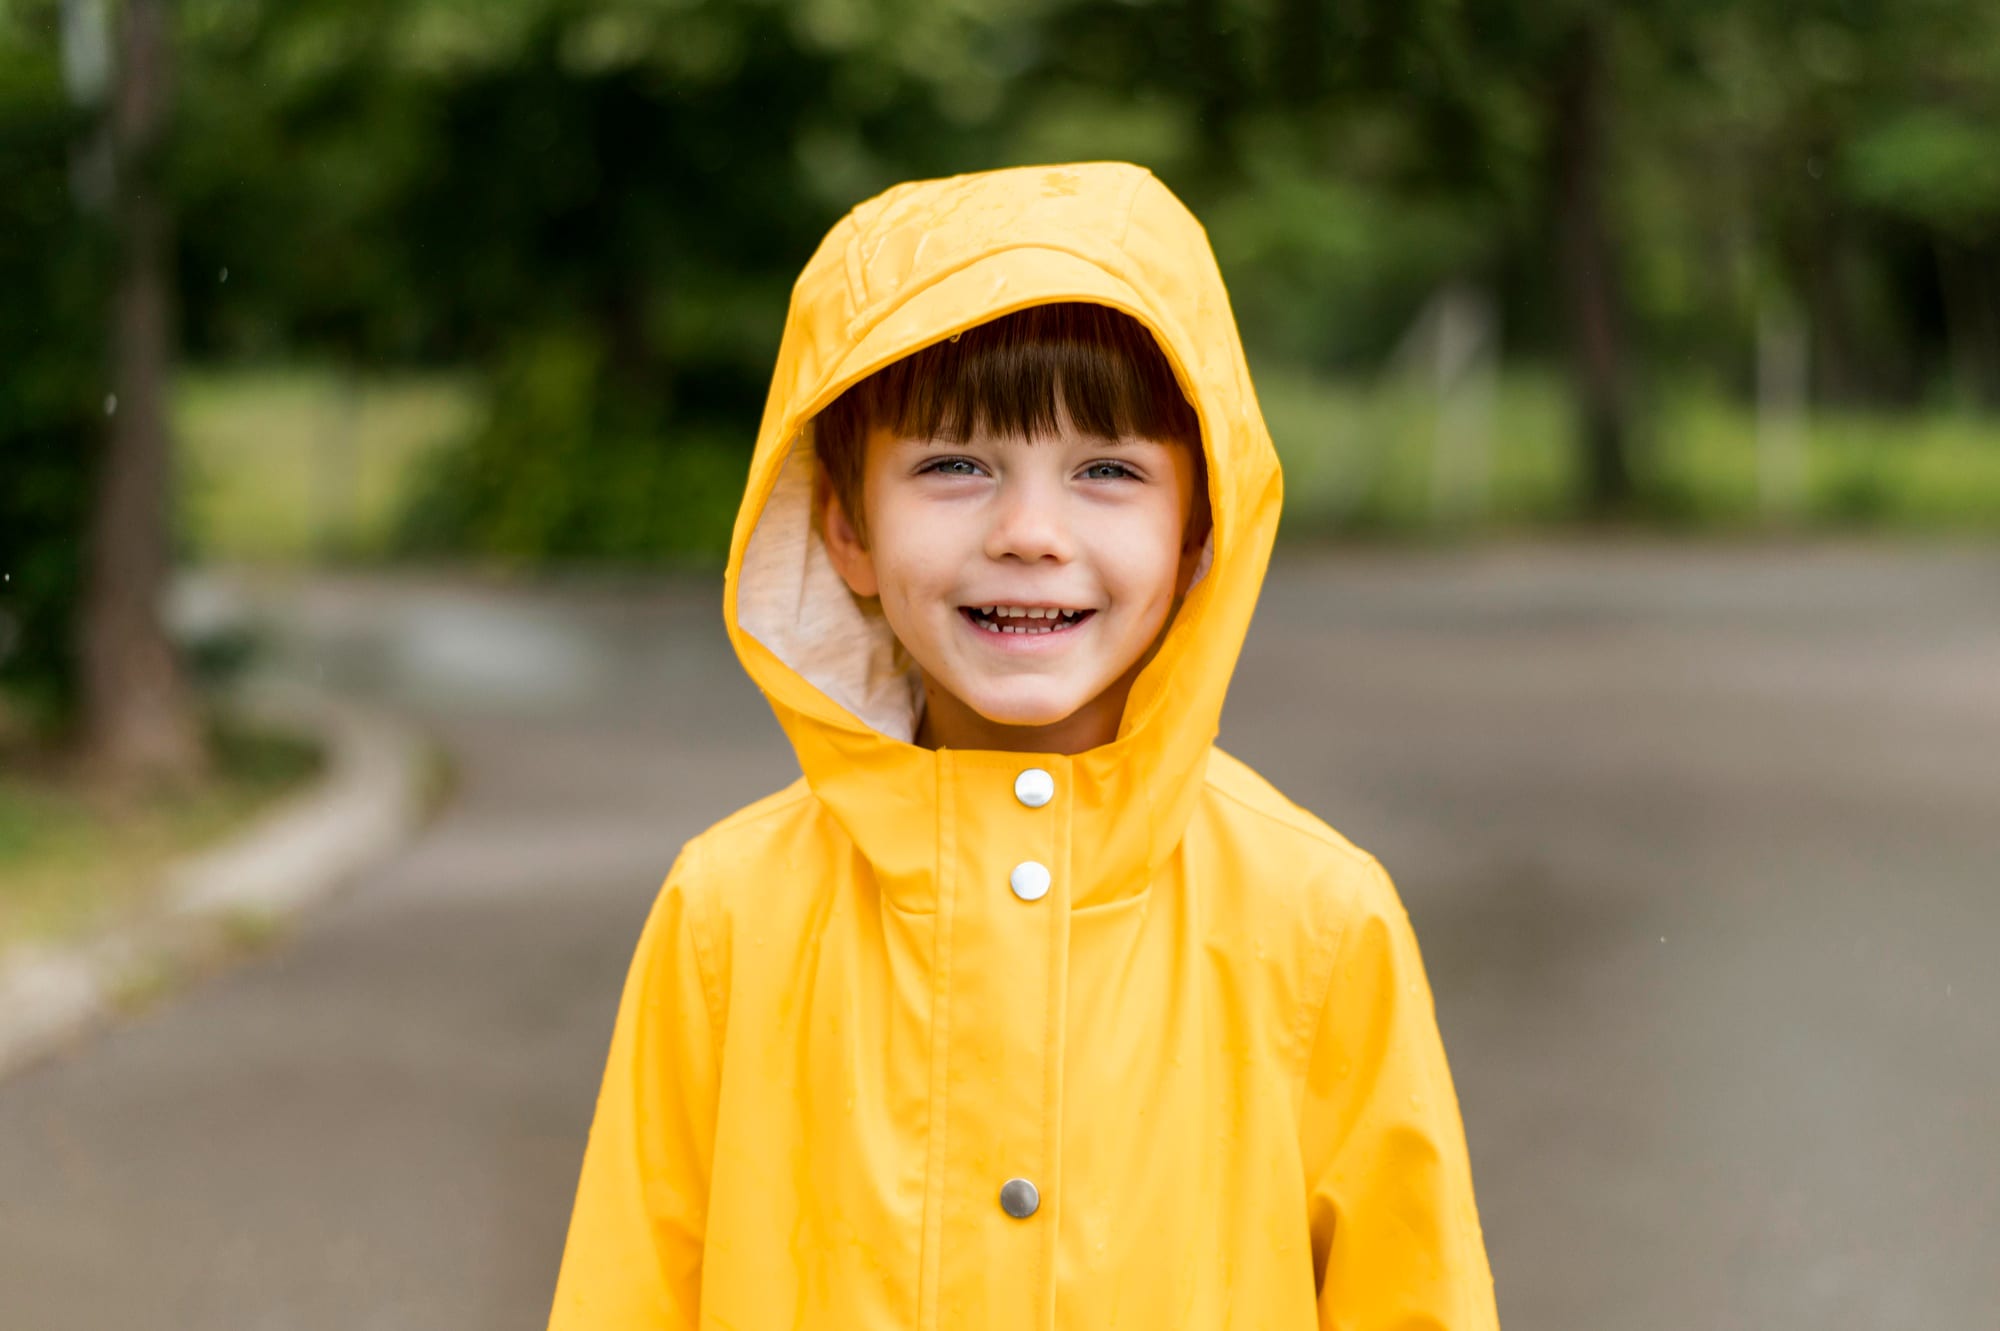 little-kid-smiling-rain-coat.jpg